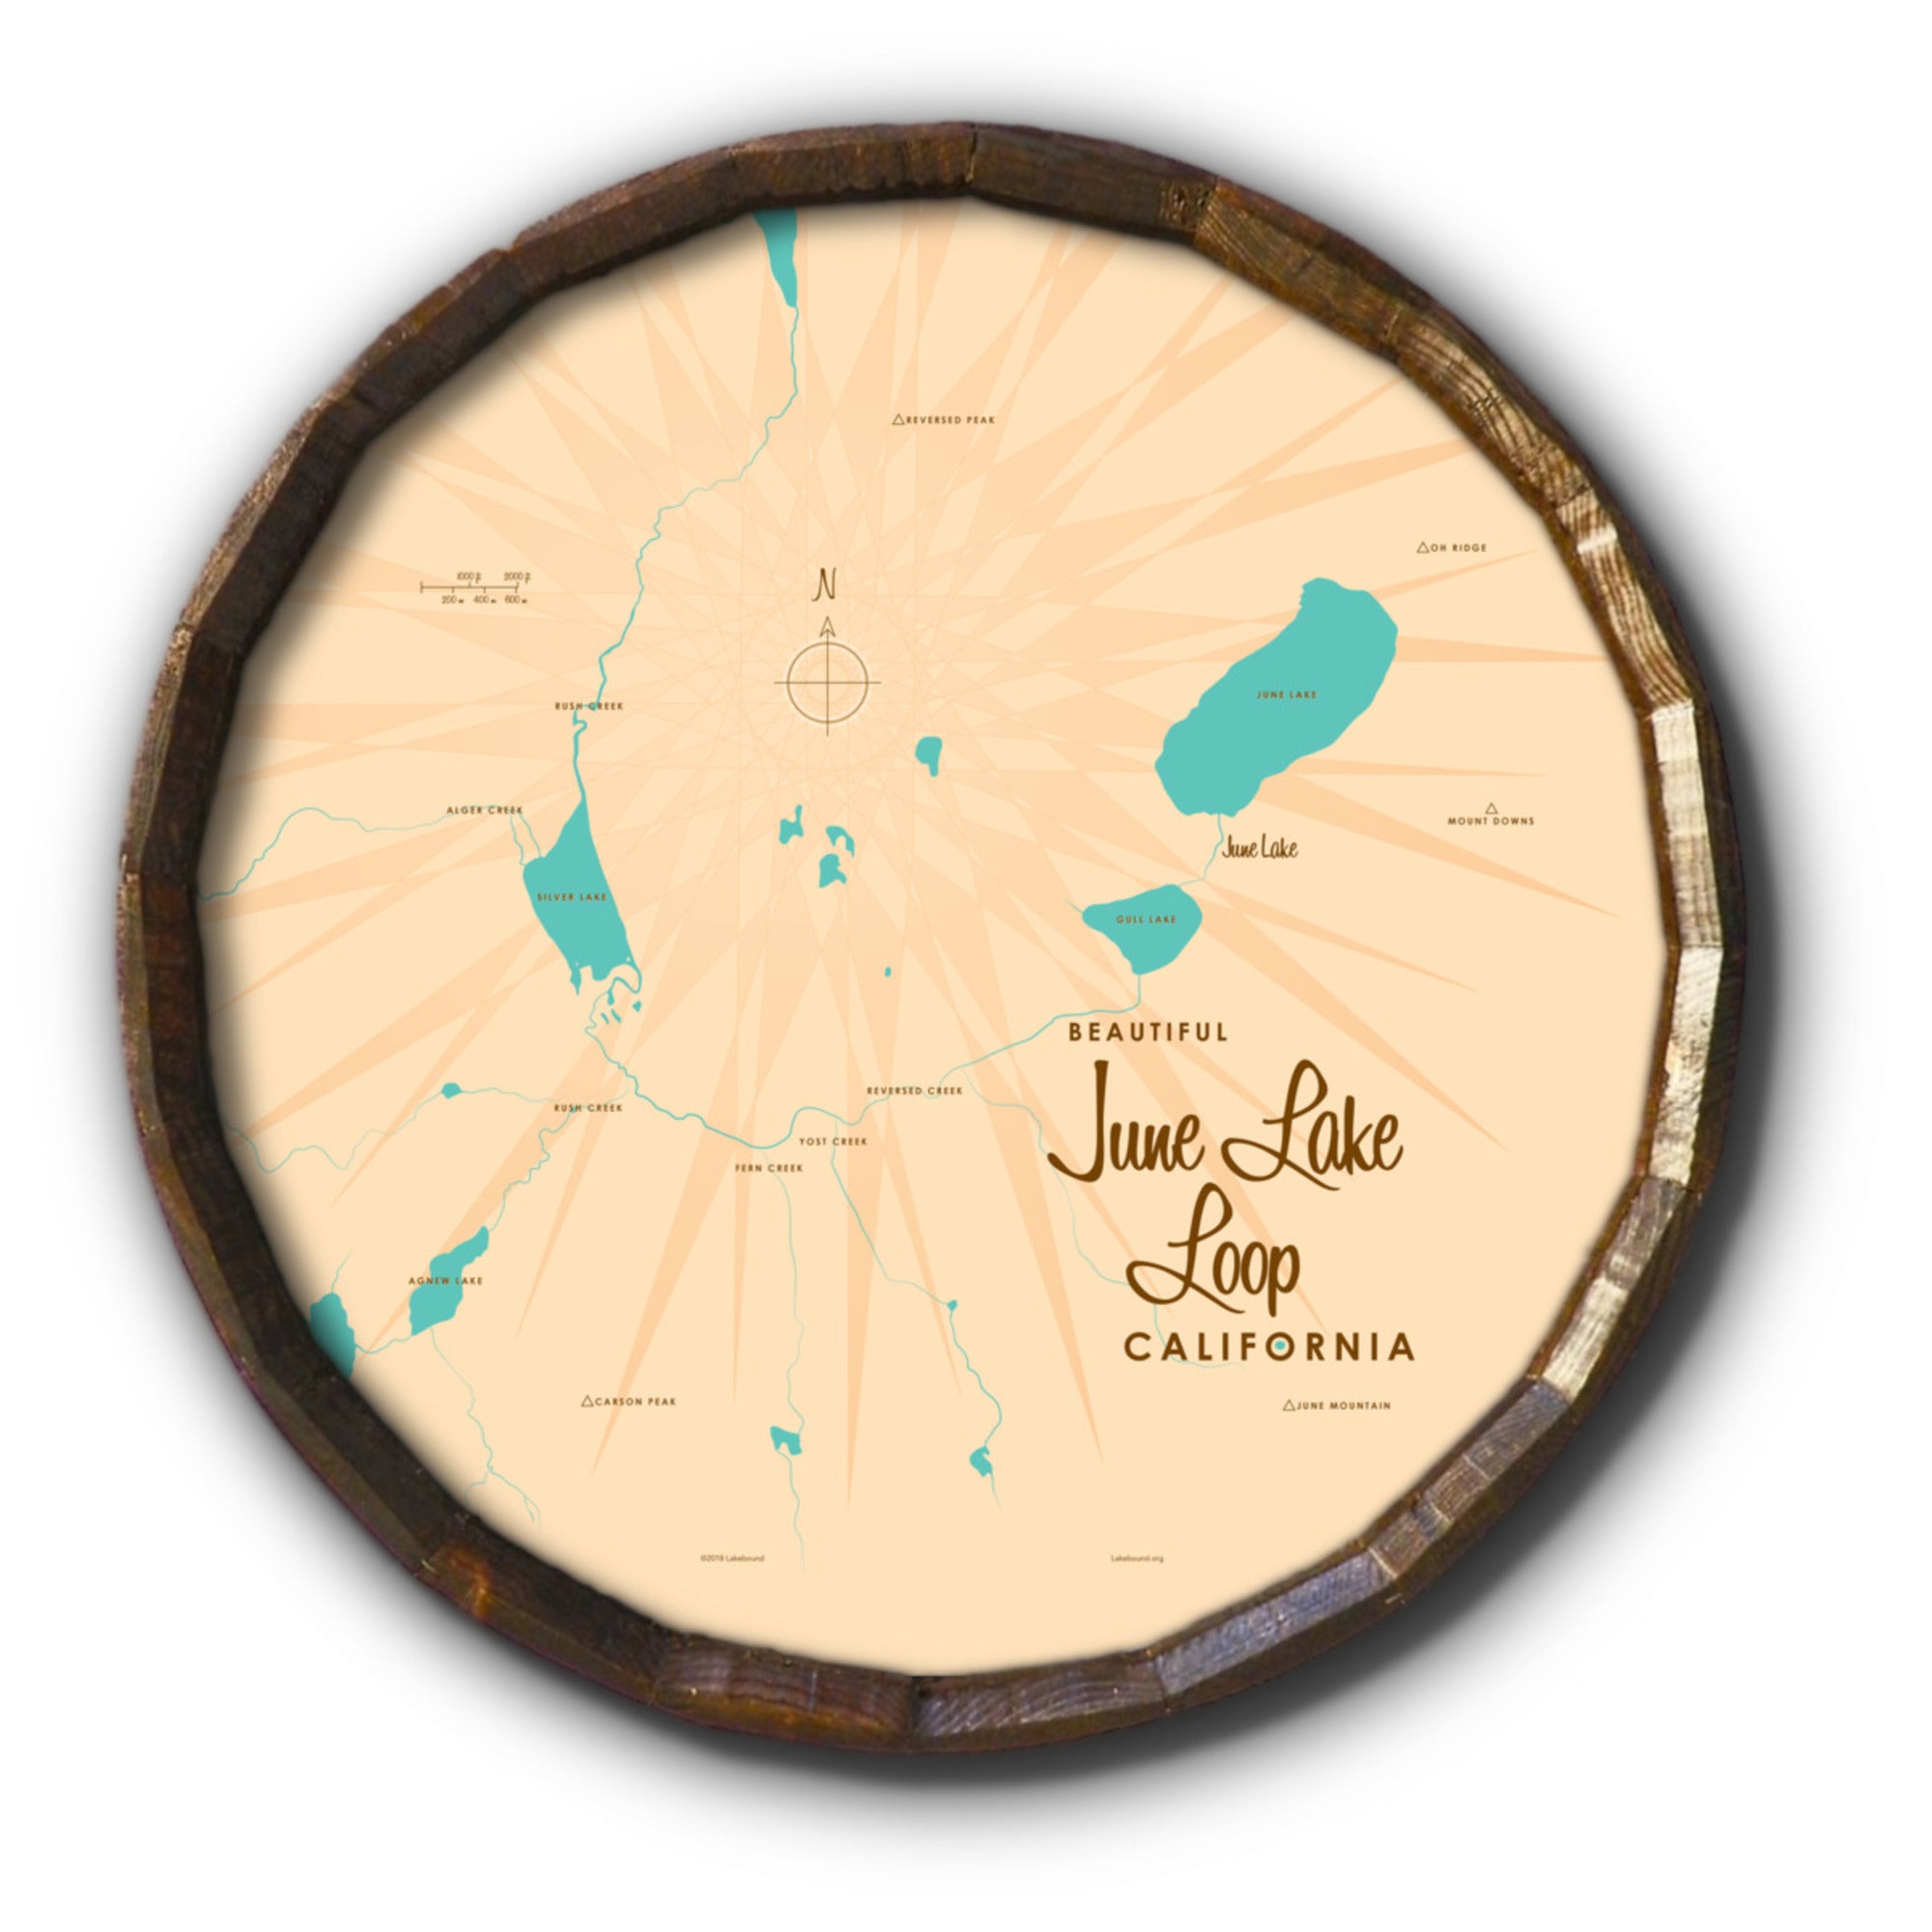 June Lake Loop California, Barrel End Map Art